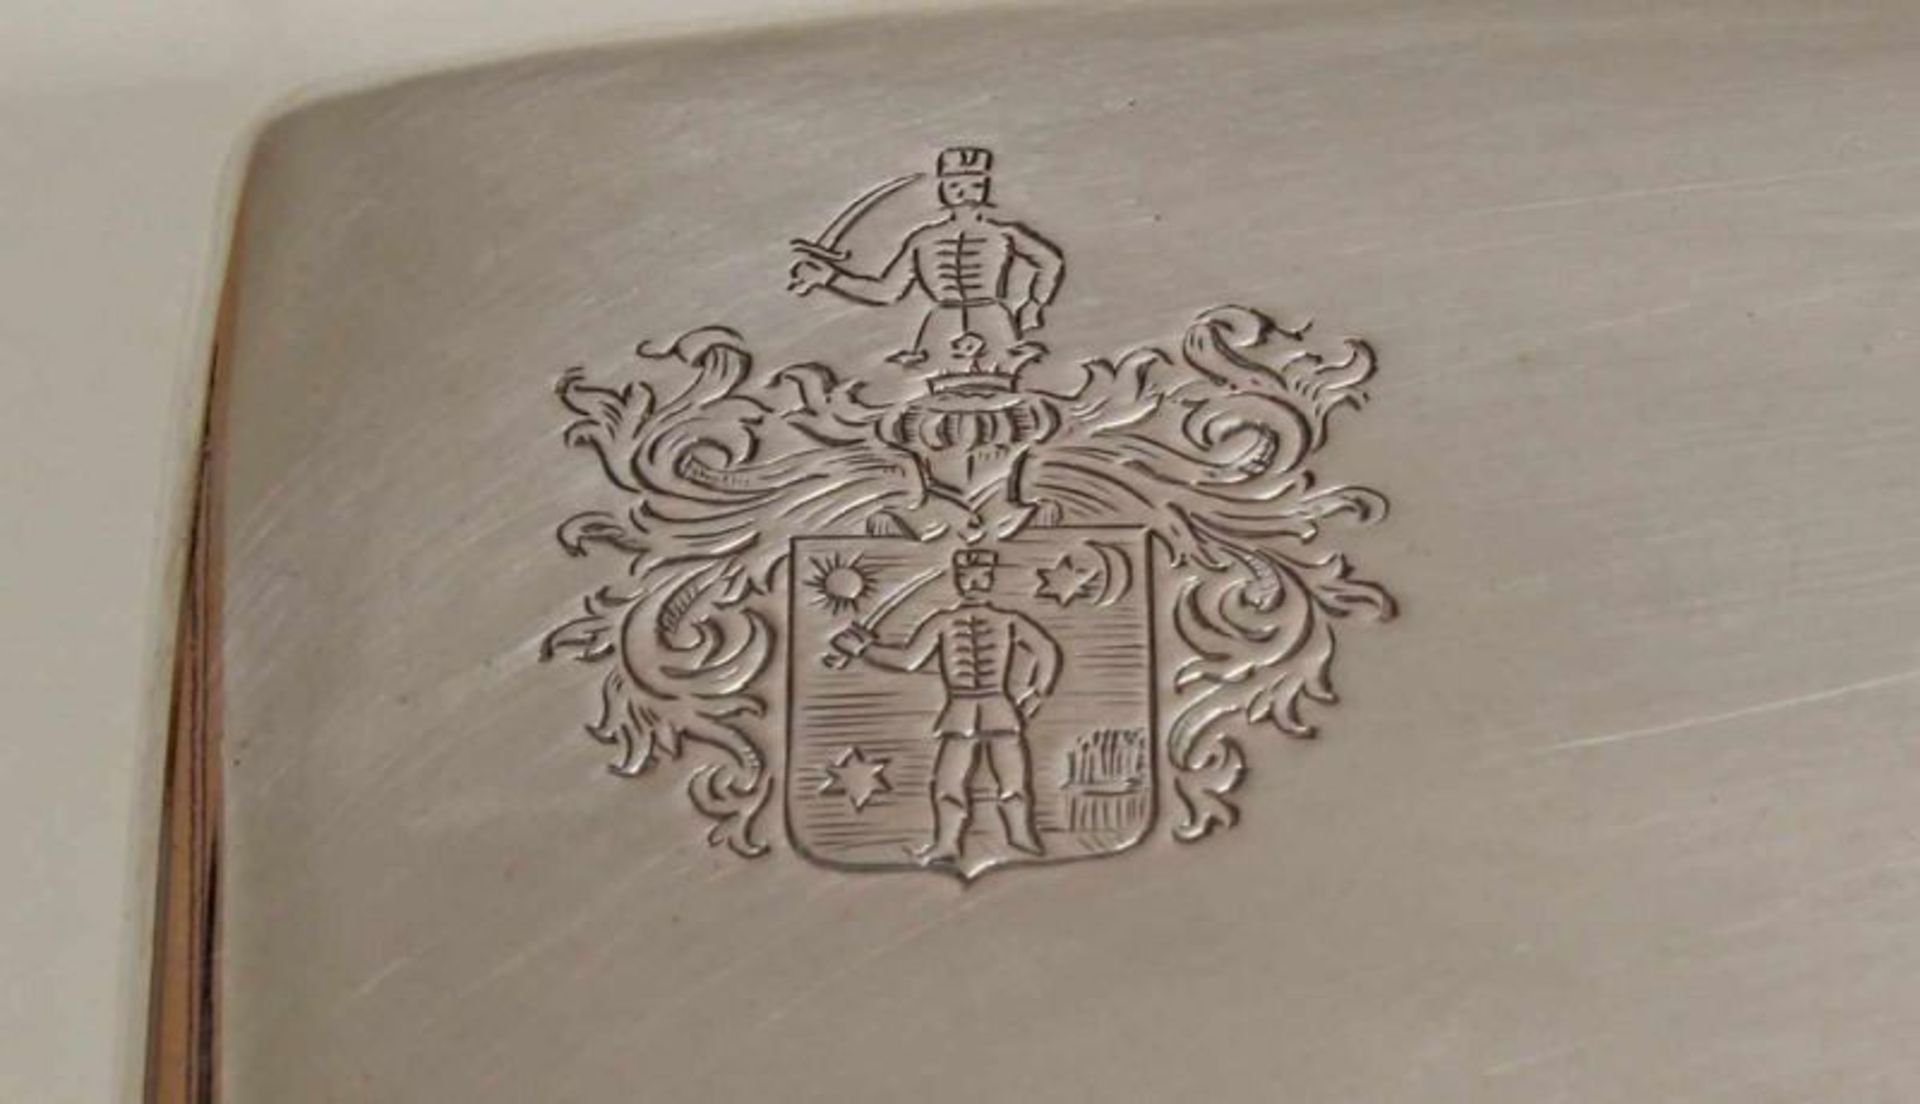 Zuckerdose, Silber 800, Österreich, rechteckig, glatt, Kugelfüße, zwei bewegliche Handhaben, - Image 2 of 2